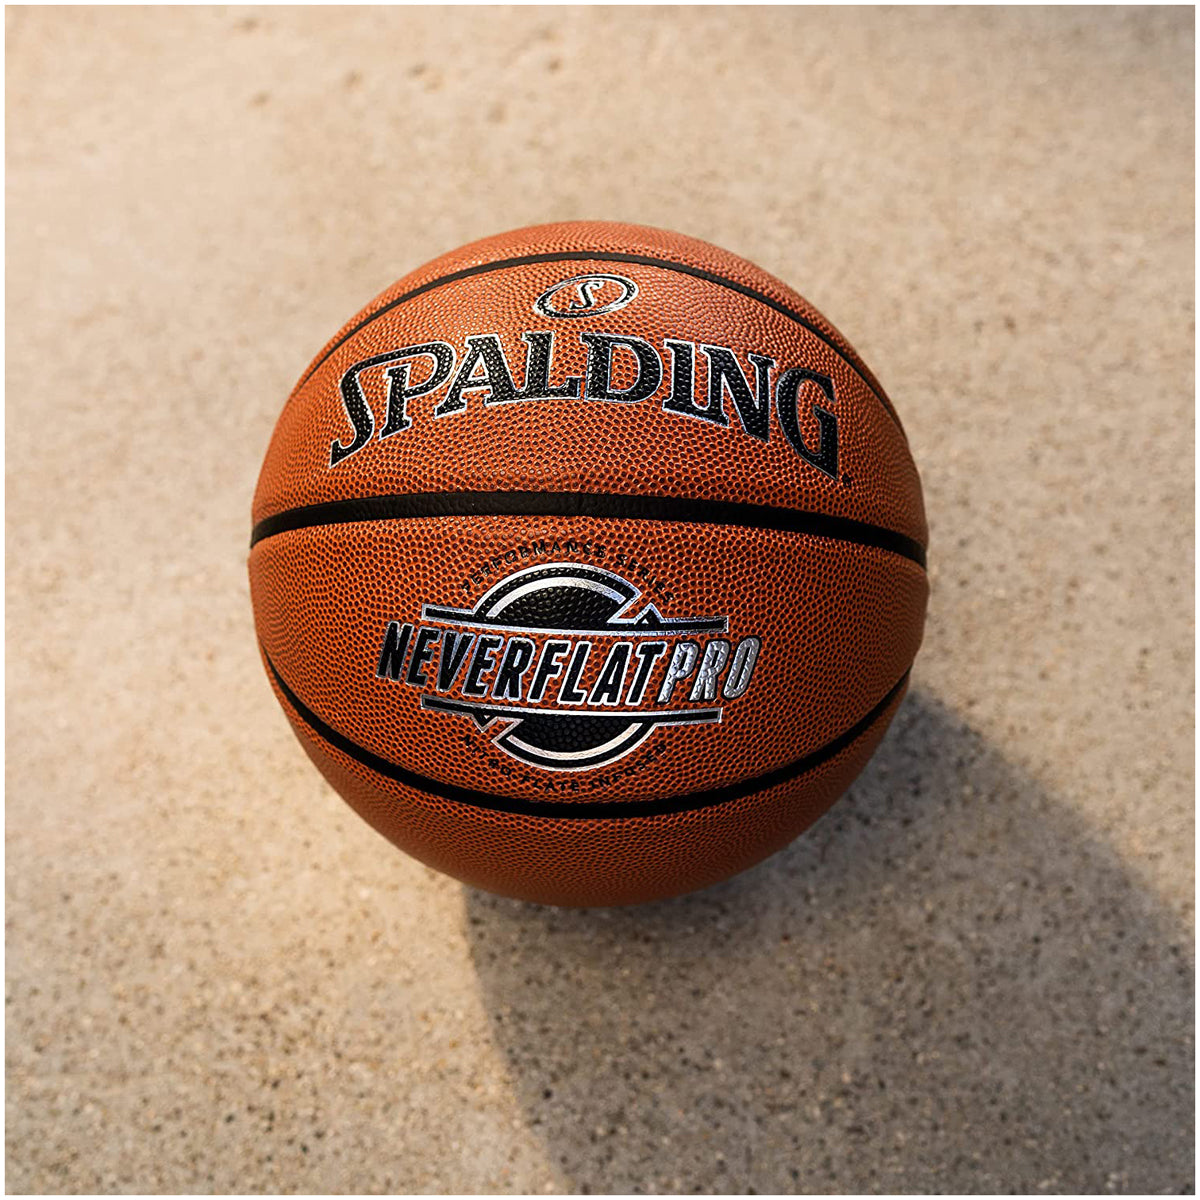 Shop Spalding Max Grip Composite Indoor/Outdoor Basketball